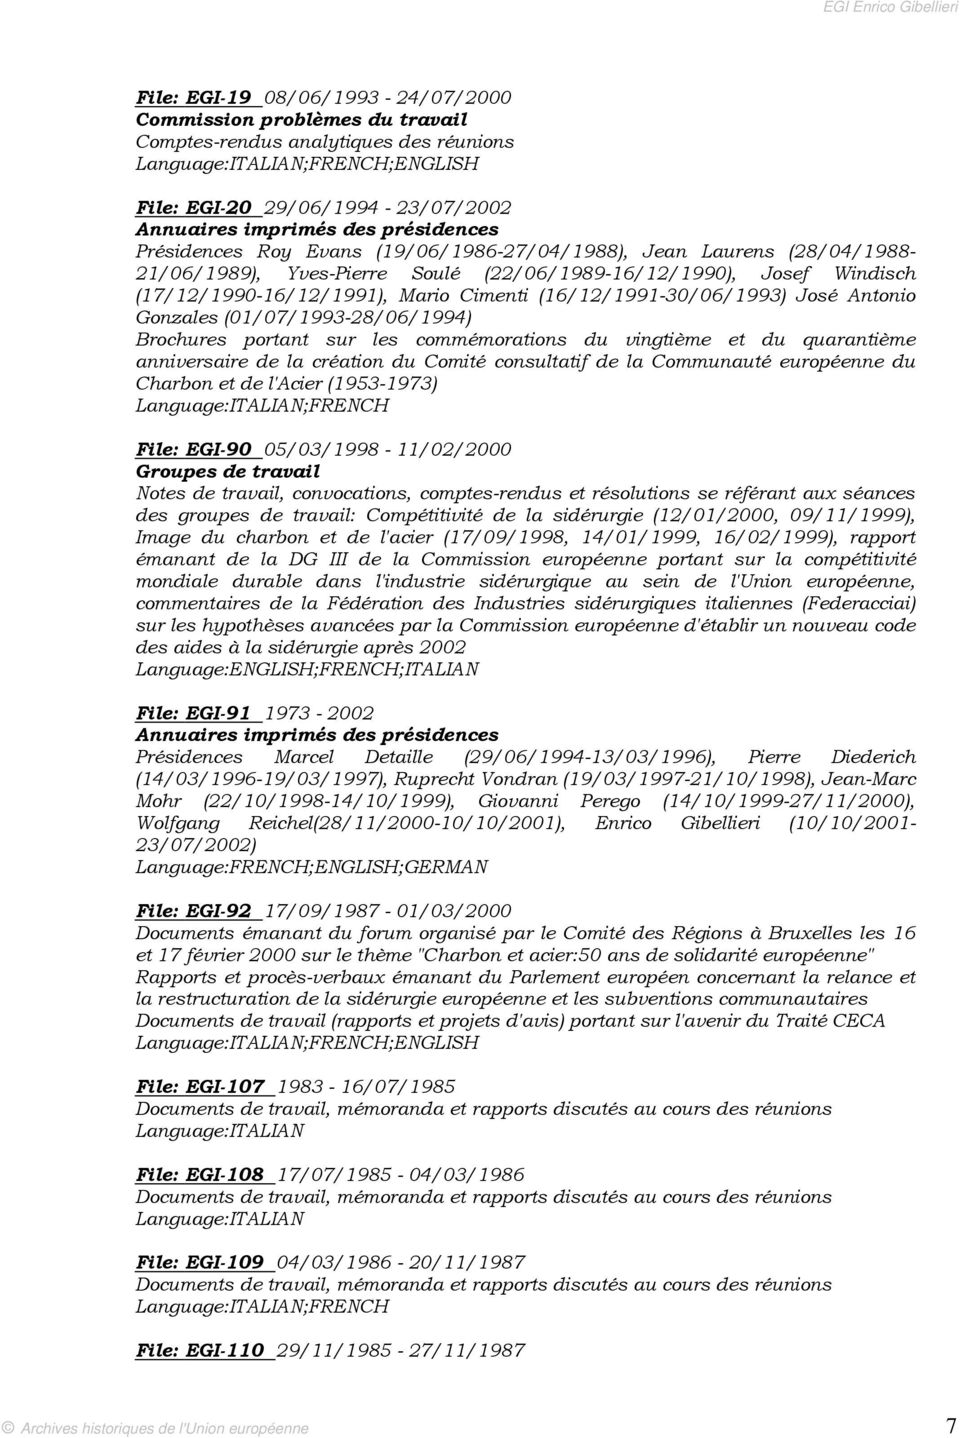 Gonzales (01/07/1993-28/06/1994) Brochures portant sur les commémorations du vingtième et du quarantième anniversaire de la création du Comité consultatif de la Communauté européenne du Charbon et de